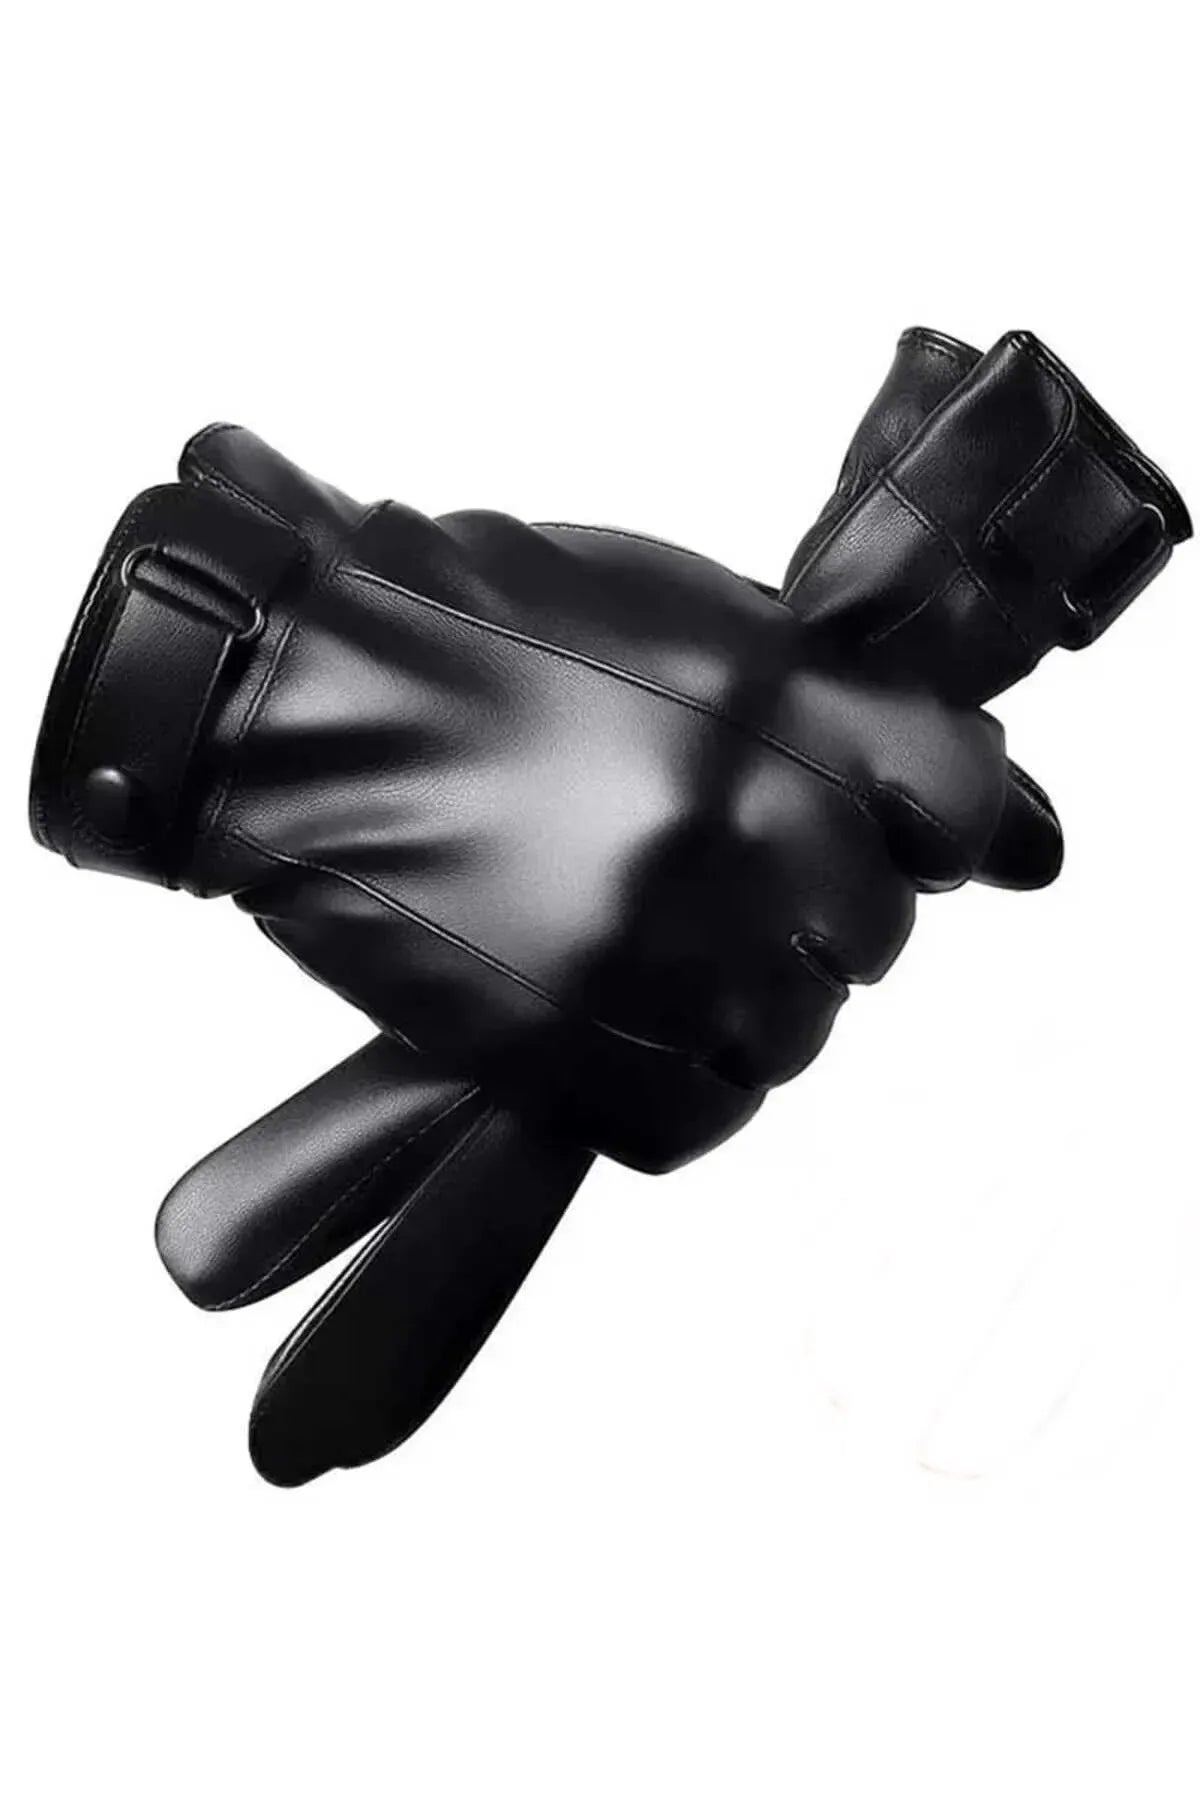 Zwarte kunstleren handschoenen voor heren